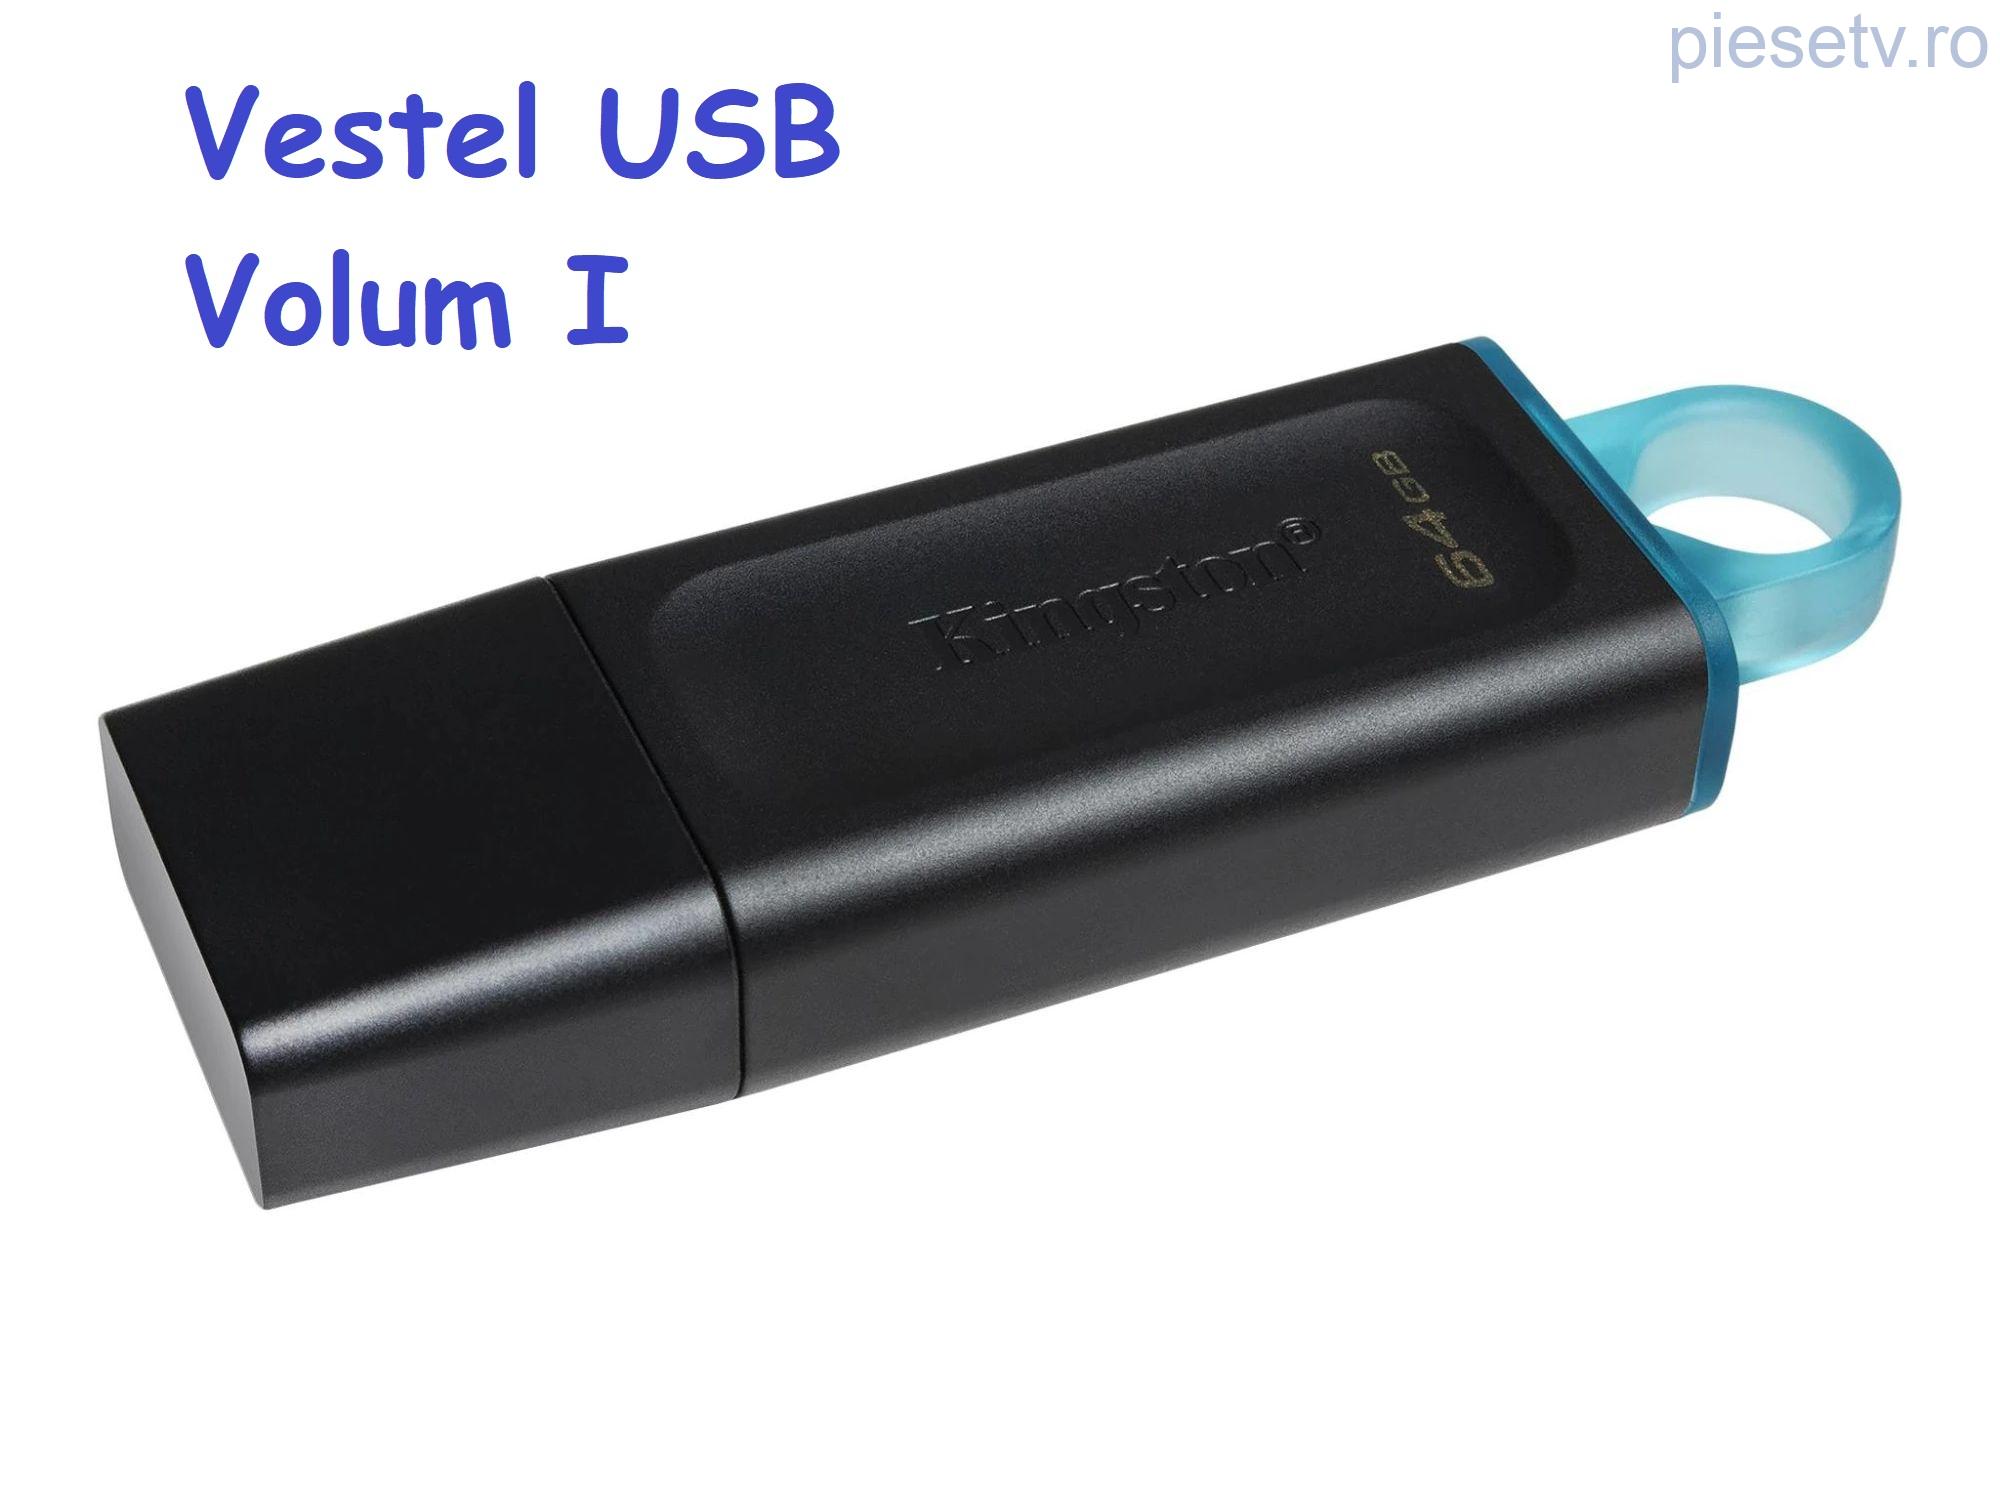 Stick USB NOU de 64Gb cu Softuri Vestel - Volum I 